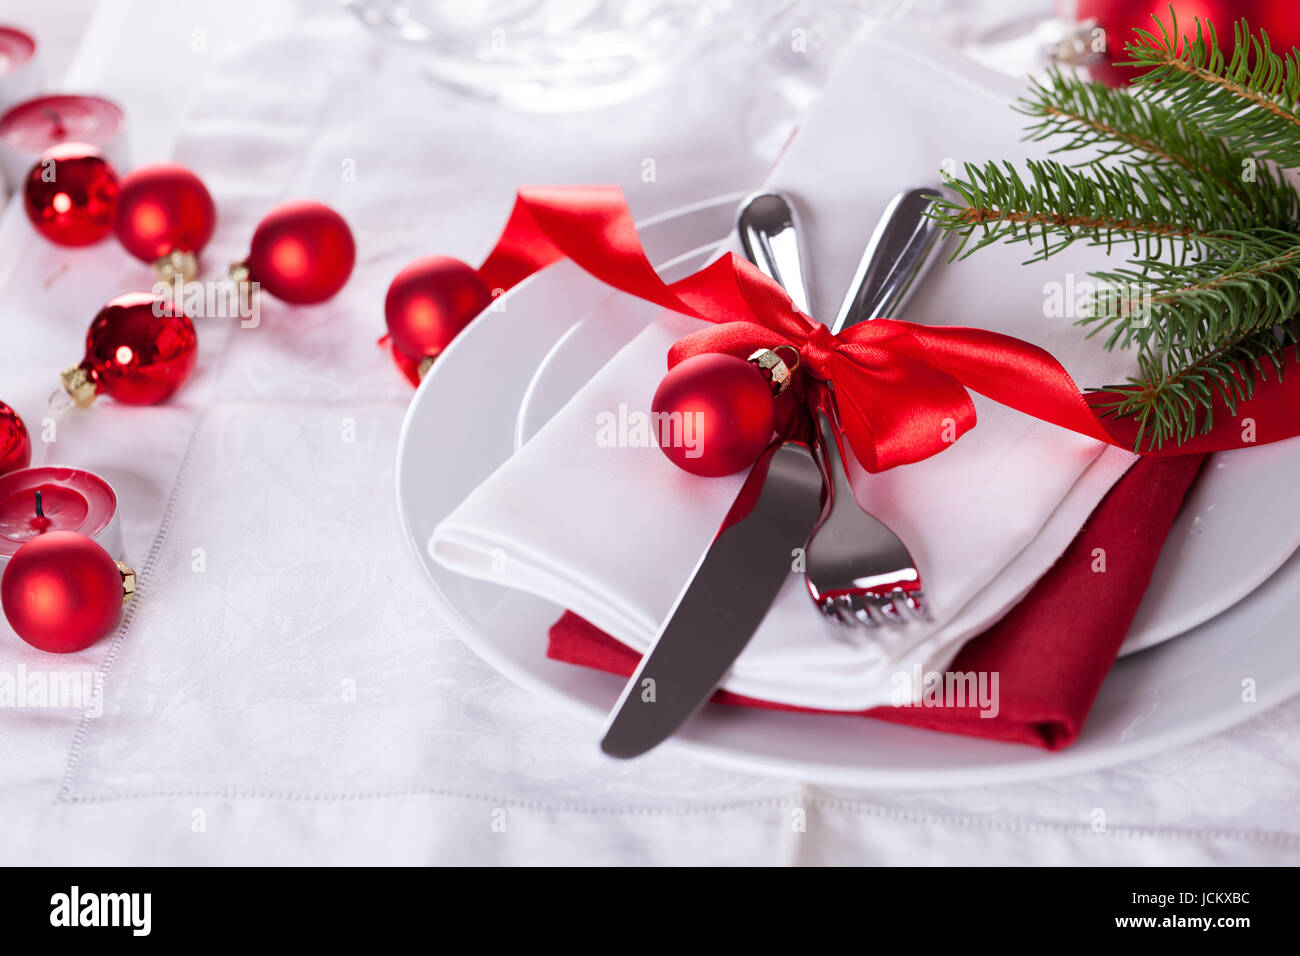 Weihnachtstafel Romantische mit roten Kugeln und roter schleife mit Besteck Messer und Gabel auf einer Serviette Banque D'Images